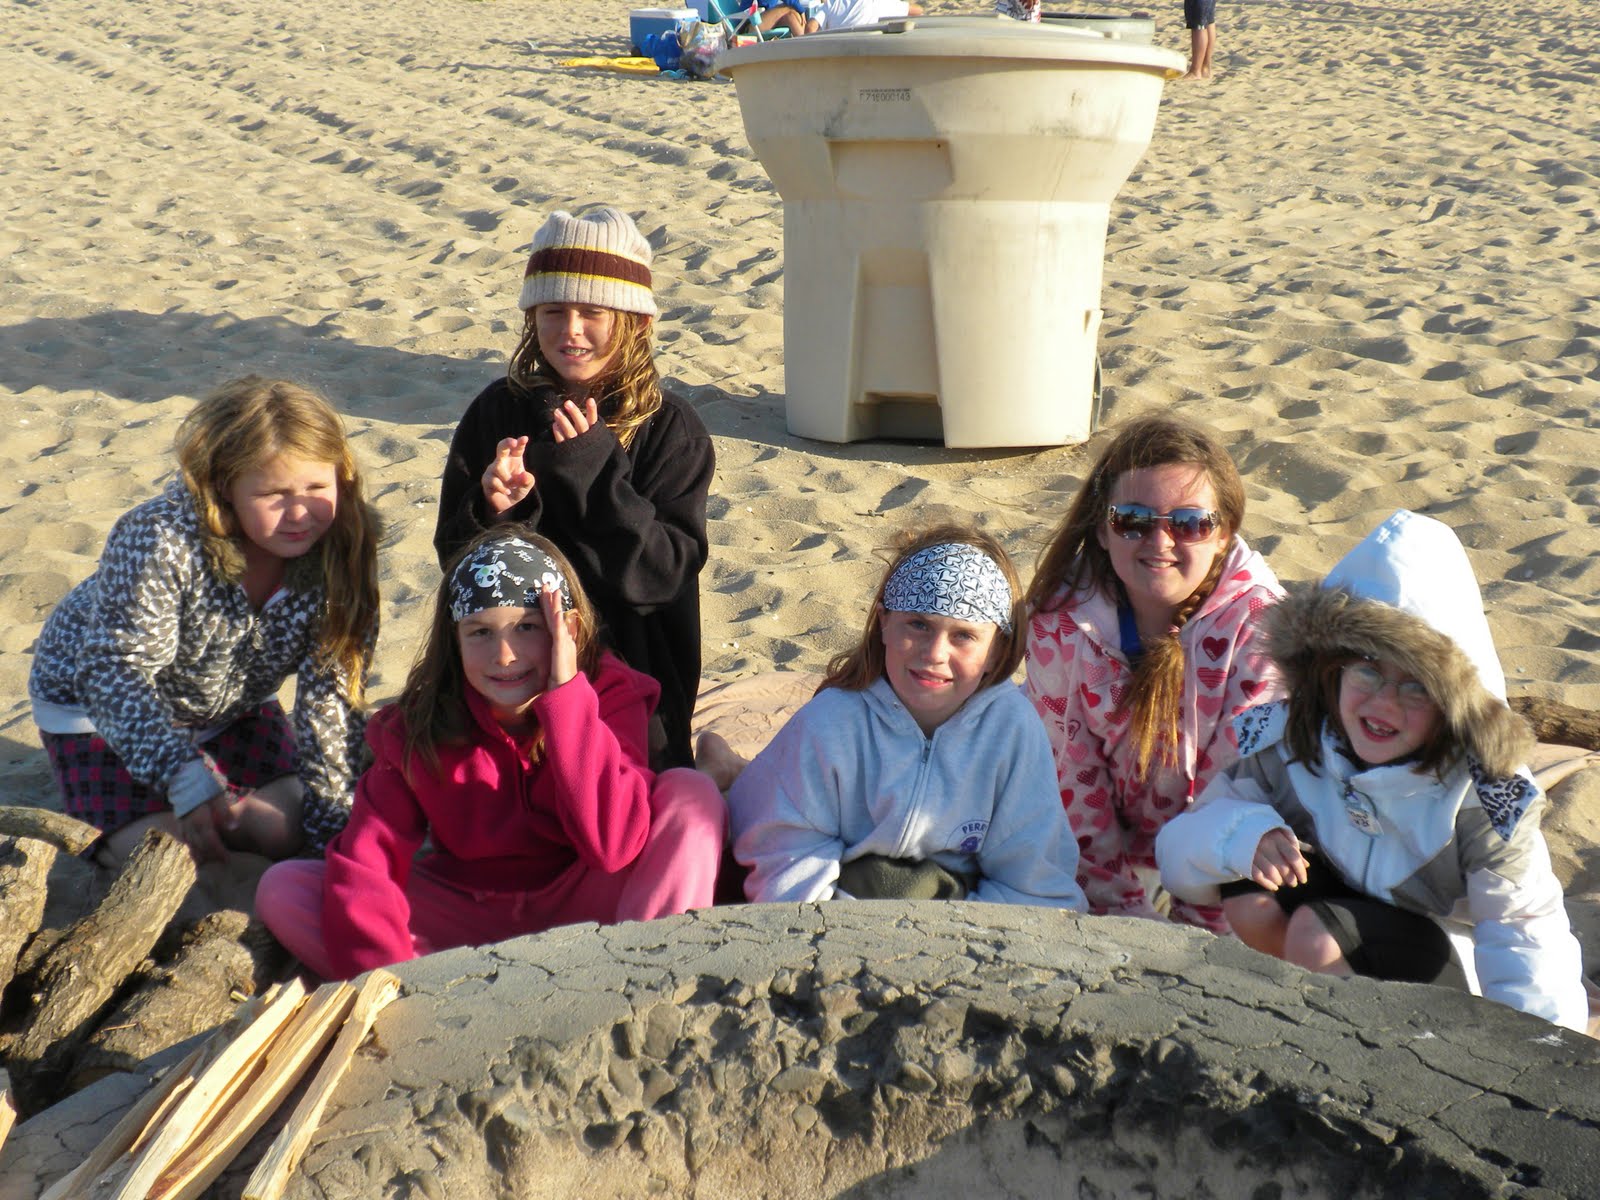 Huntington Beach Girl Scout Troop Fun At The Beach